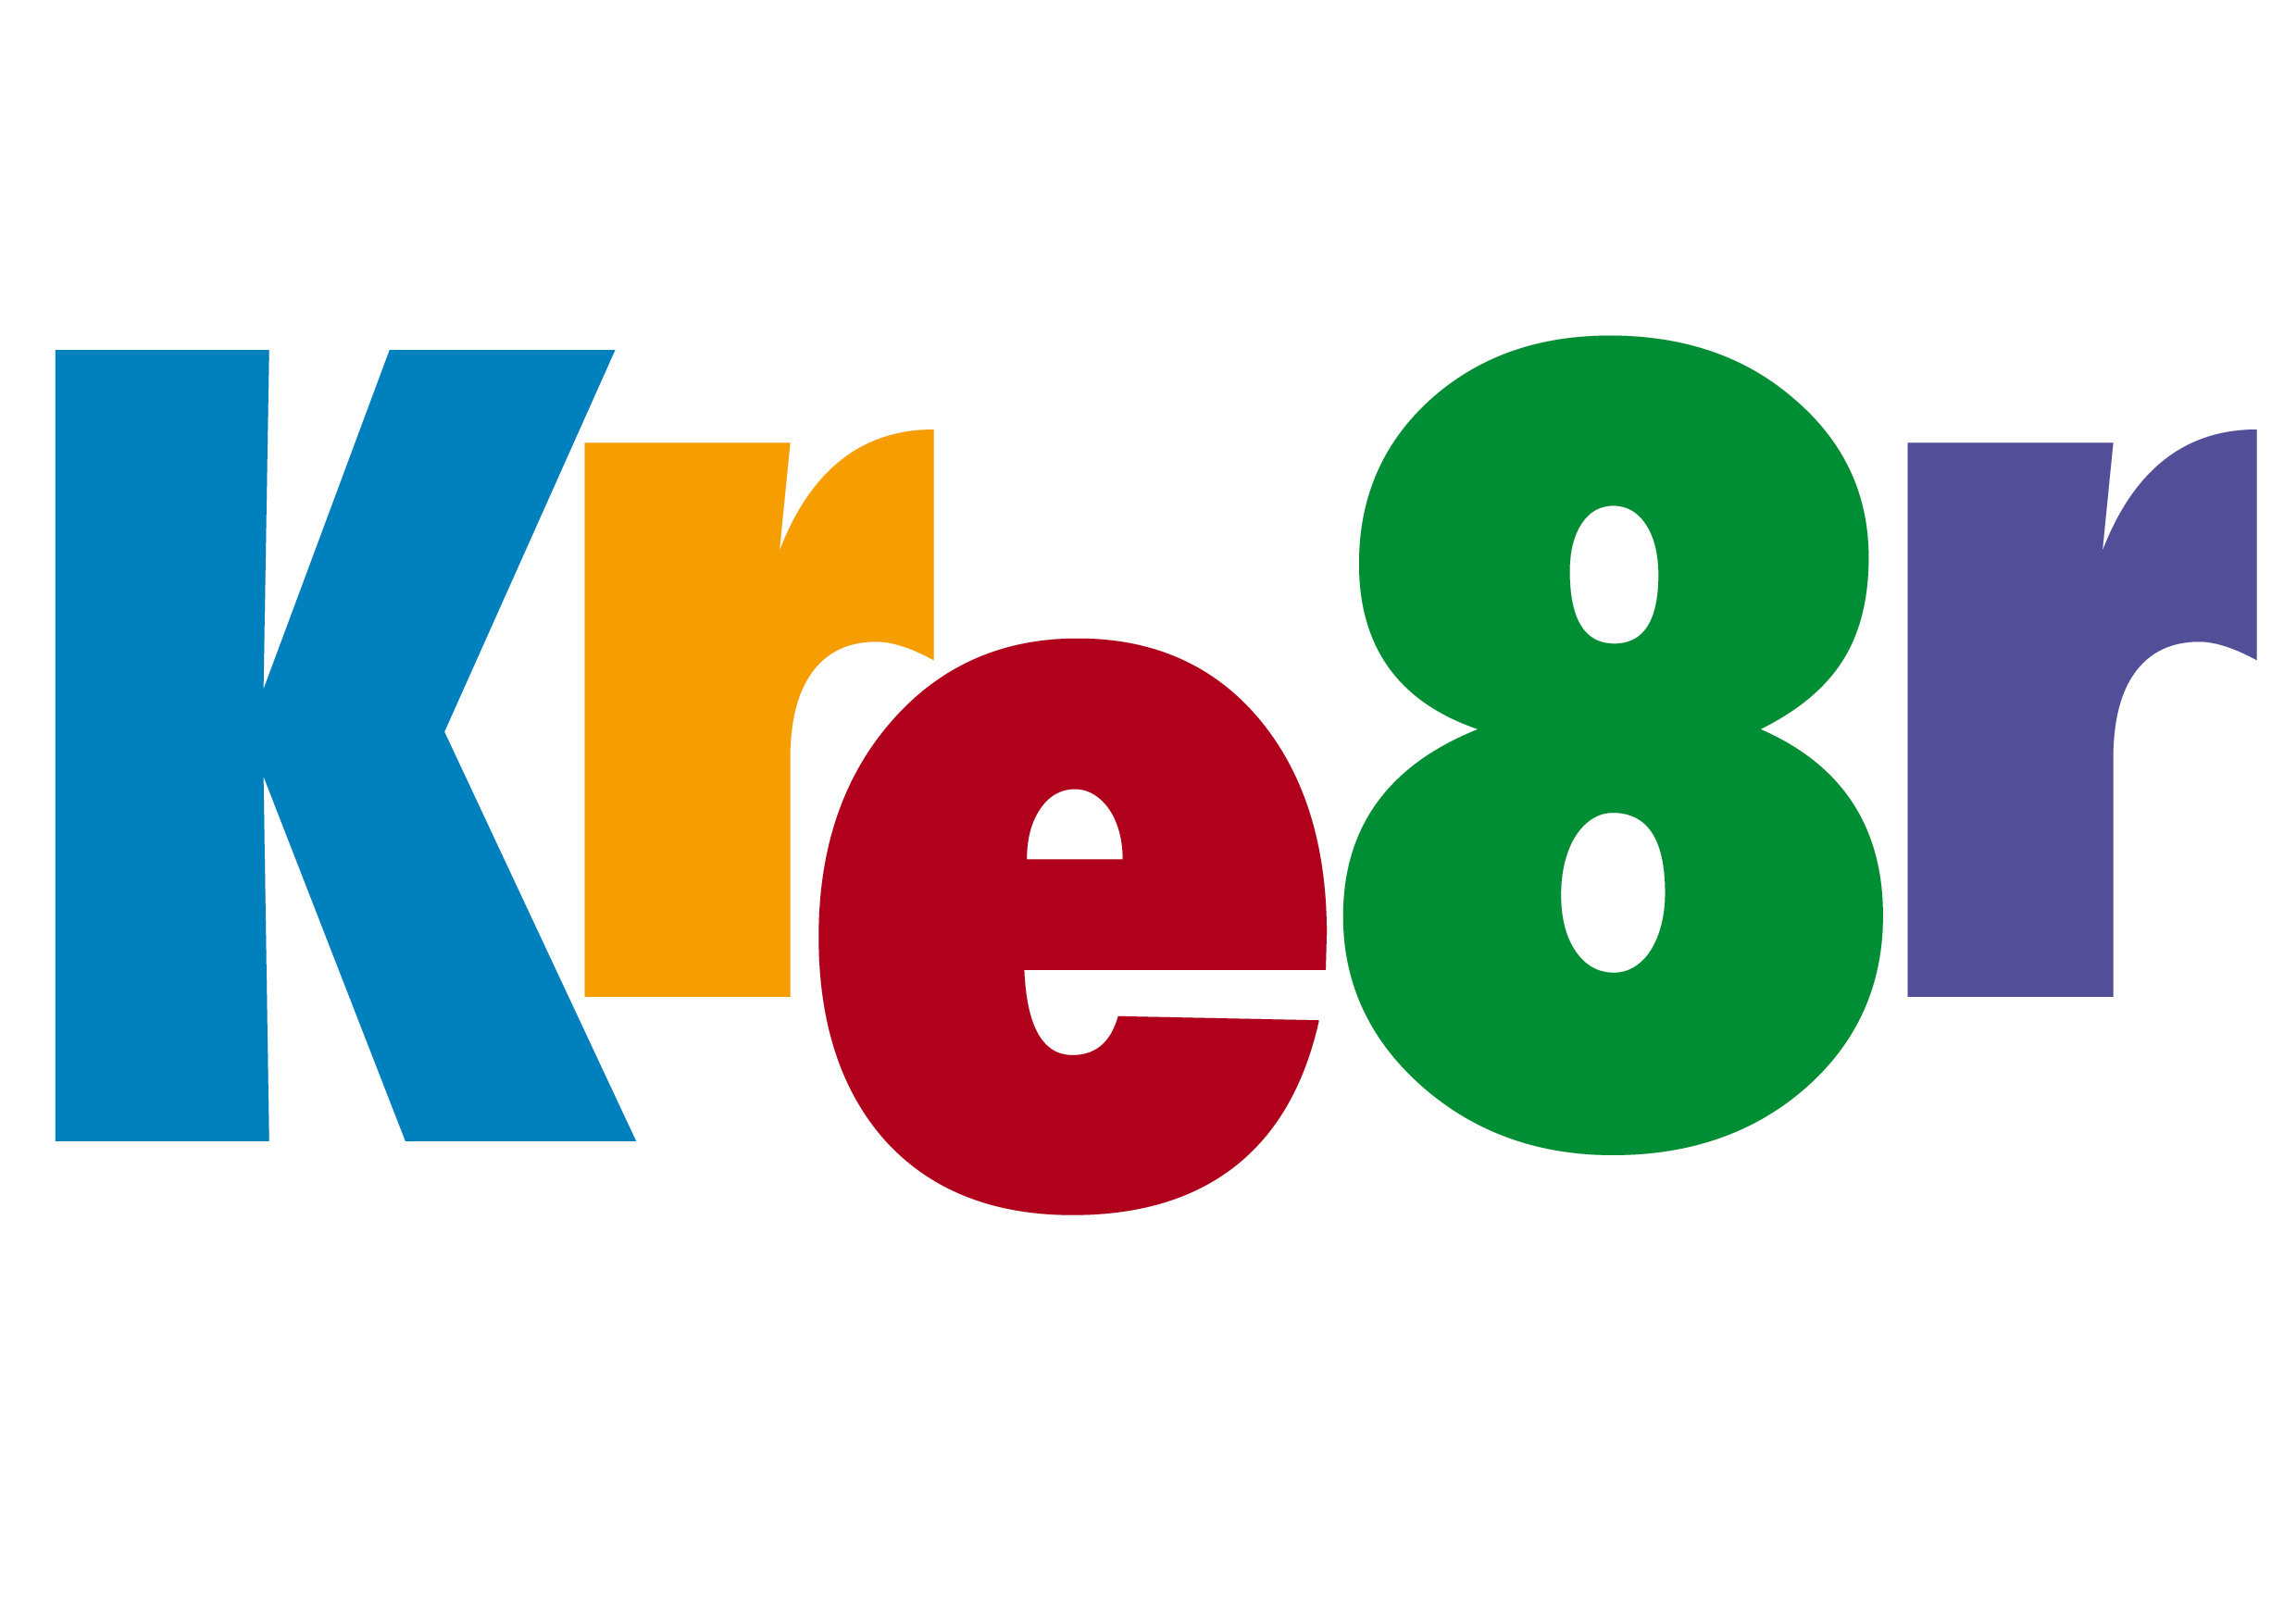 Kre8r